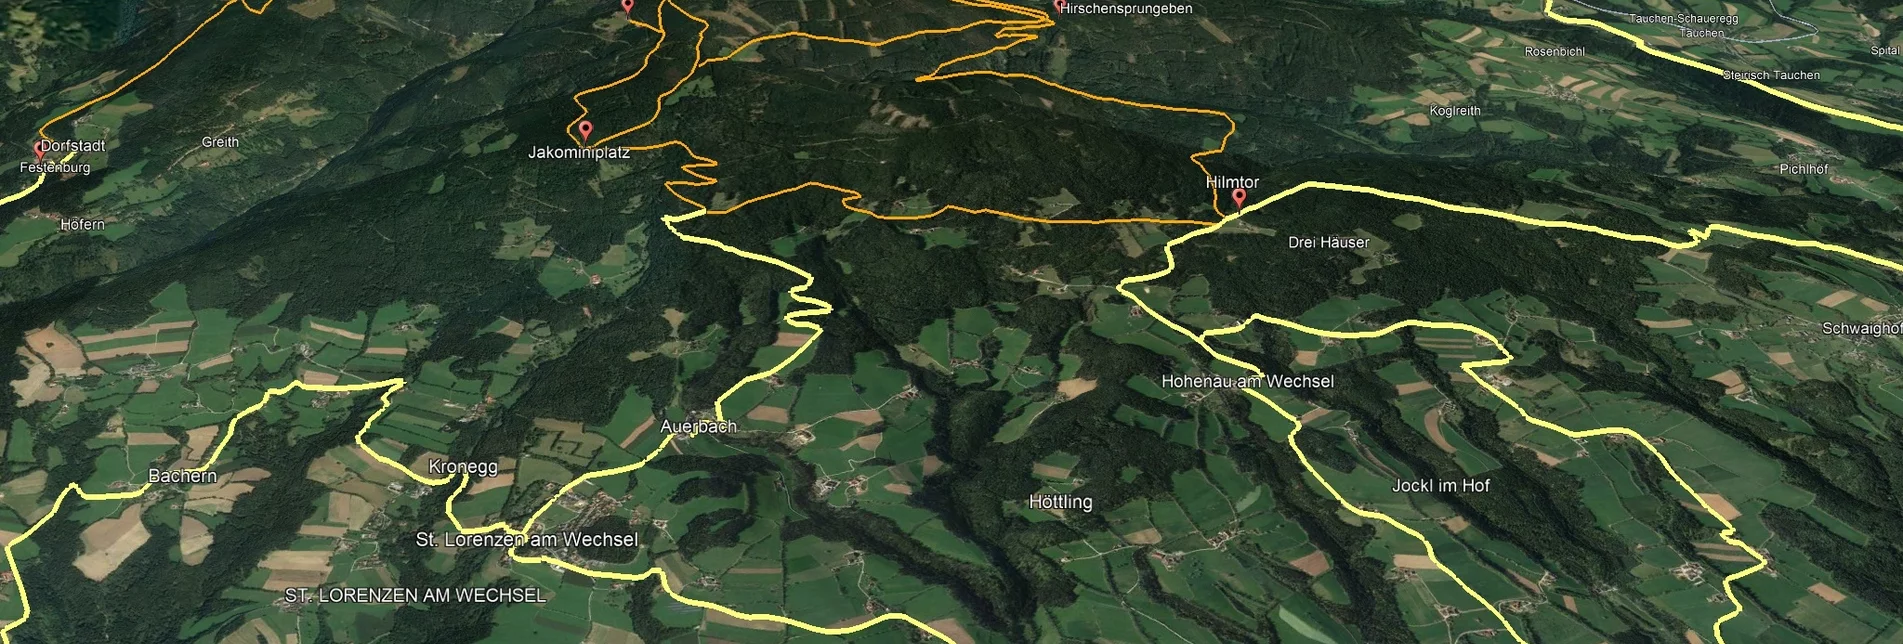 Mountainbike VORSCHAU Steirische Wexl Trails - Zubringer Pinggau nach Tränktörl - Touren-Impression #1 | © Verein Tourismusentwicklung Steirischer Wechsel